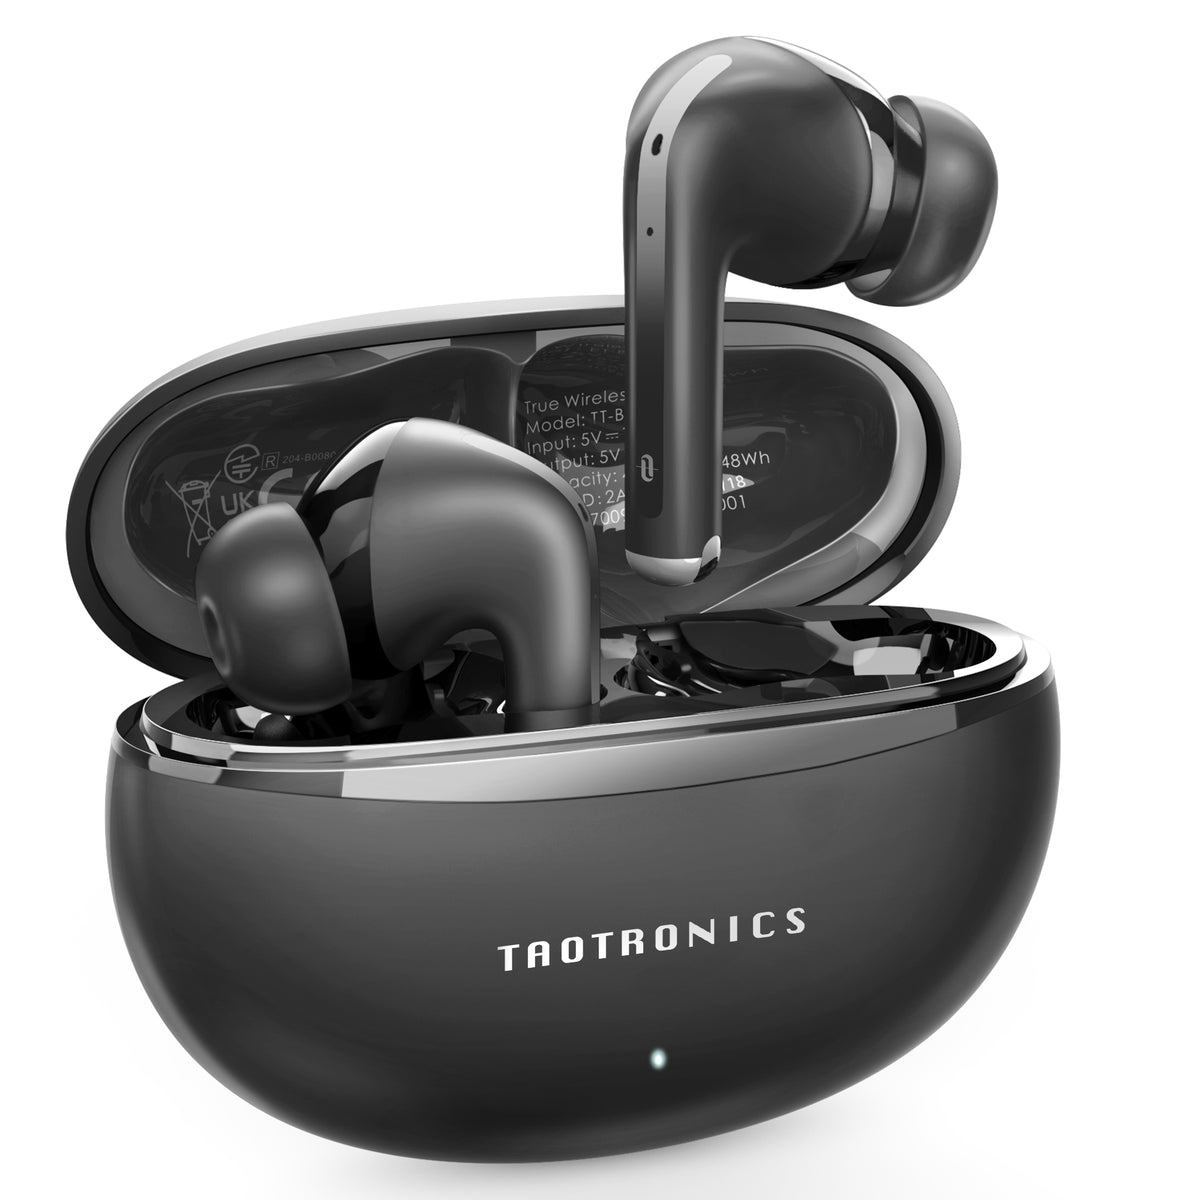 True Wireless Headphone - IPX7 Waterproof Wireless Earbuds